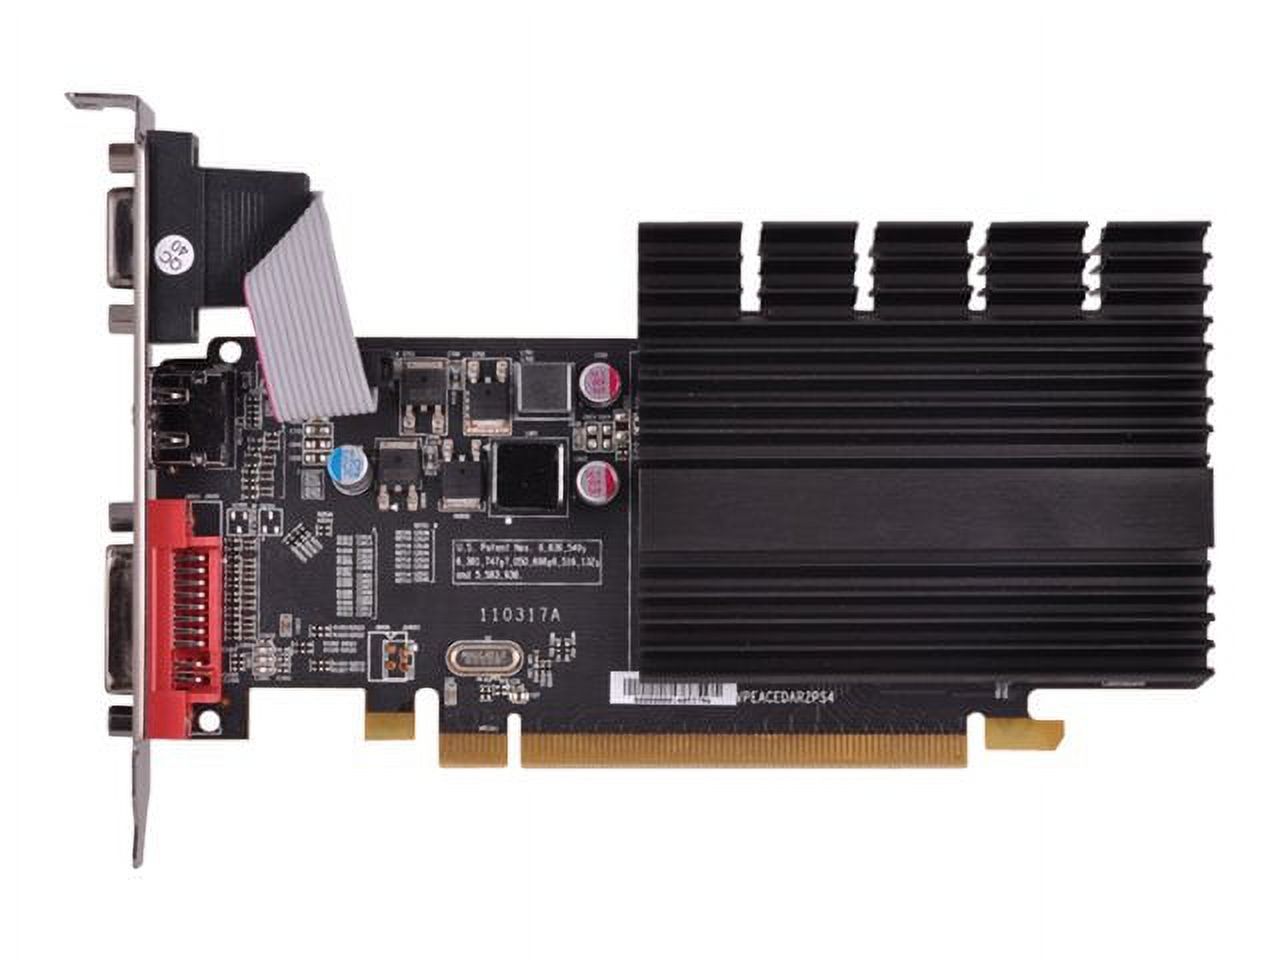 XFX RADEON HD 5450 PCI-E HDMI 1GB DDR3 DVI VGA 650MHZ - image 5 of 5